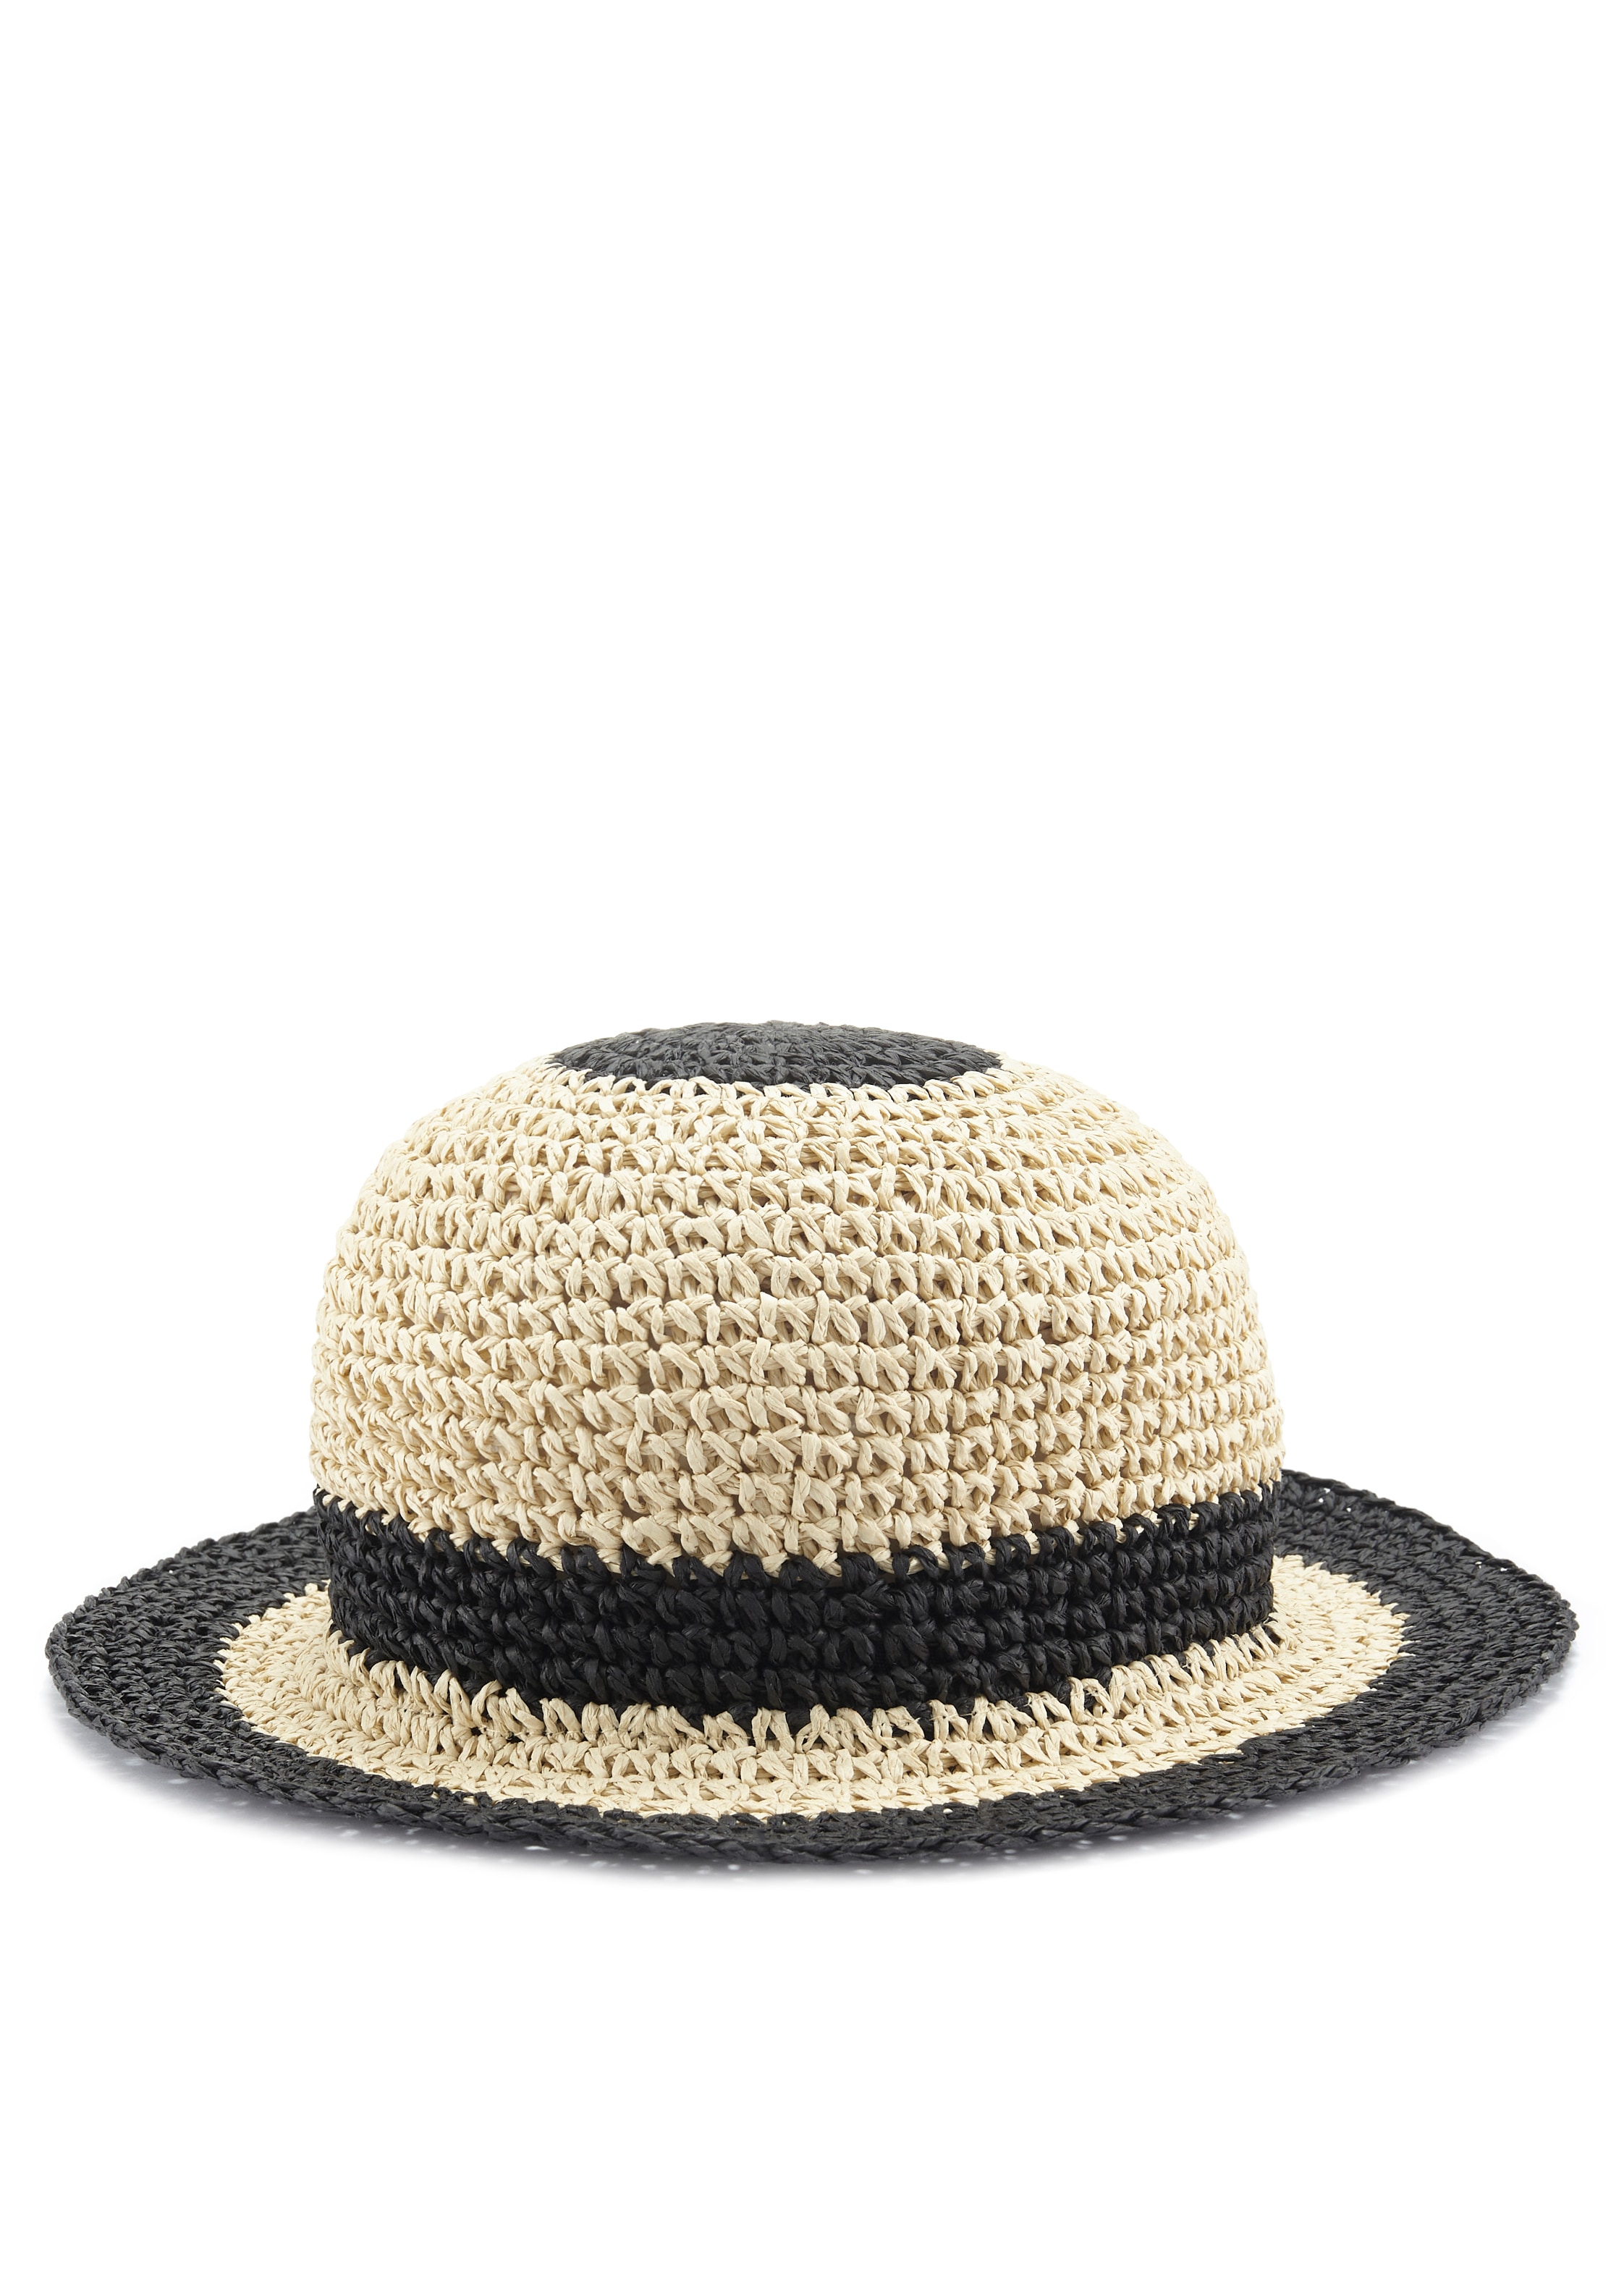 LASCANA Strohhut, Bucket Stroh, UNIVERSAL Sommerhut, Kopfbedeckung kaufen aus online | VEGAN Hat